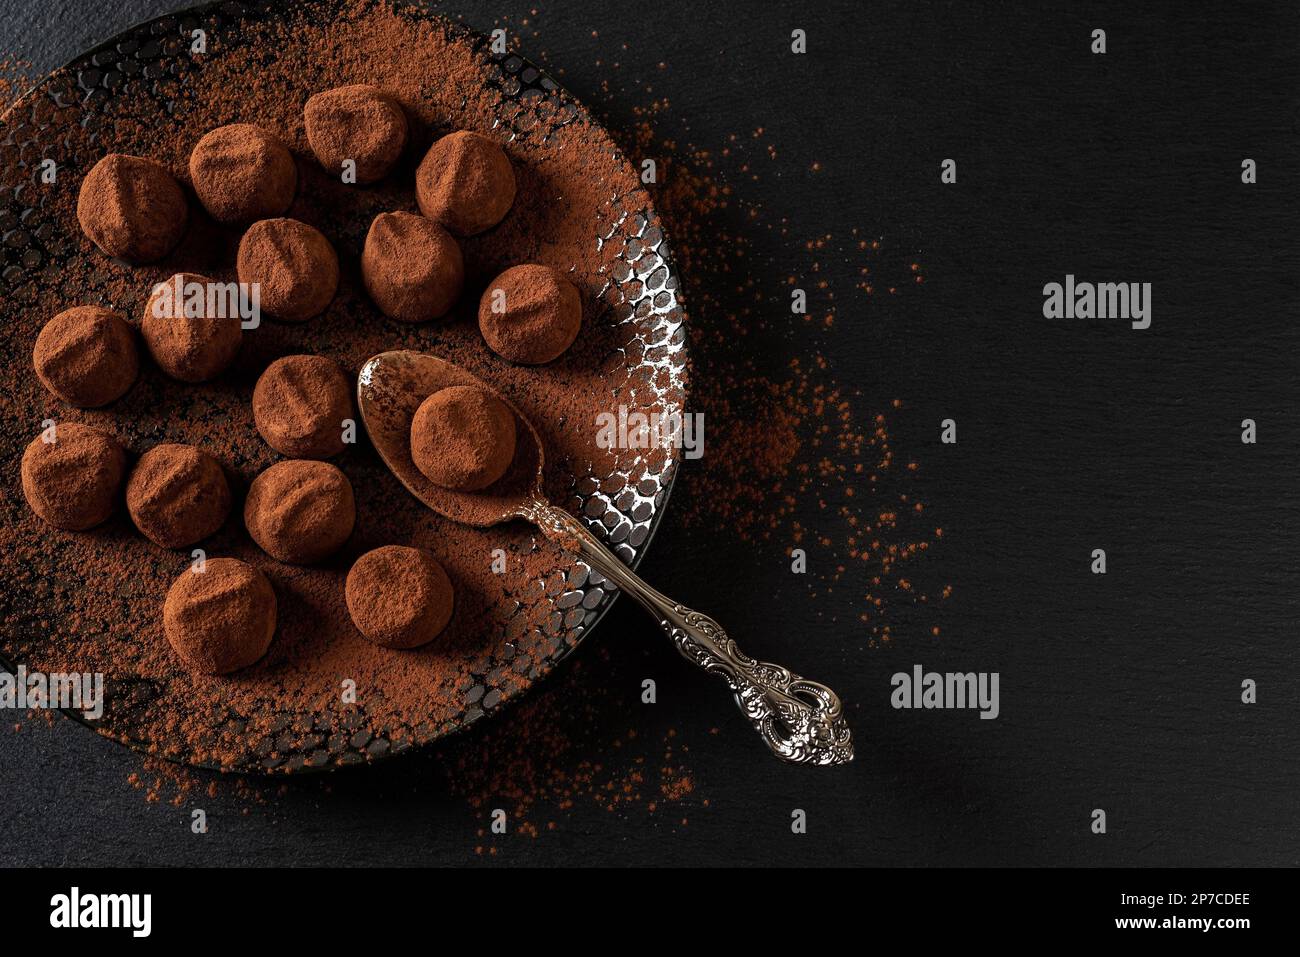 Boulettes de truffe de chocolat et cuillère sur une assiette noire. Bonbons au chocolat noir faits maison parsemés de poudre de cacao. Concept de nourriture douce. Copier l'espace. Banque D'Images